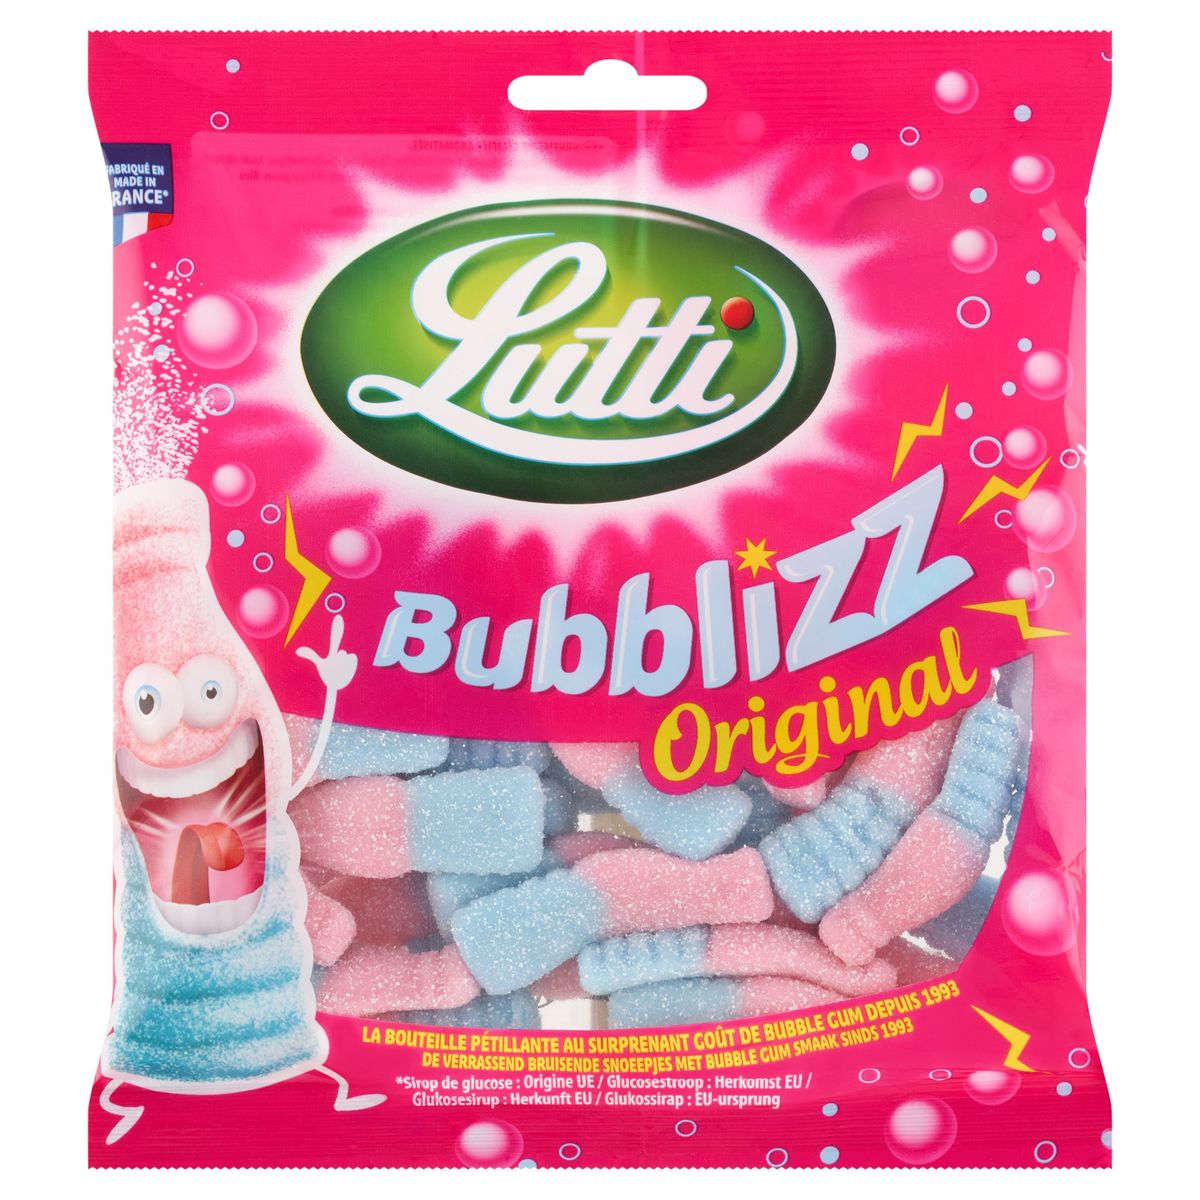 Achat / Vente Lutti Bubblizz dooo bonbons goût de bubble gum, 180g